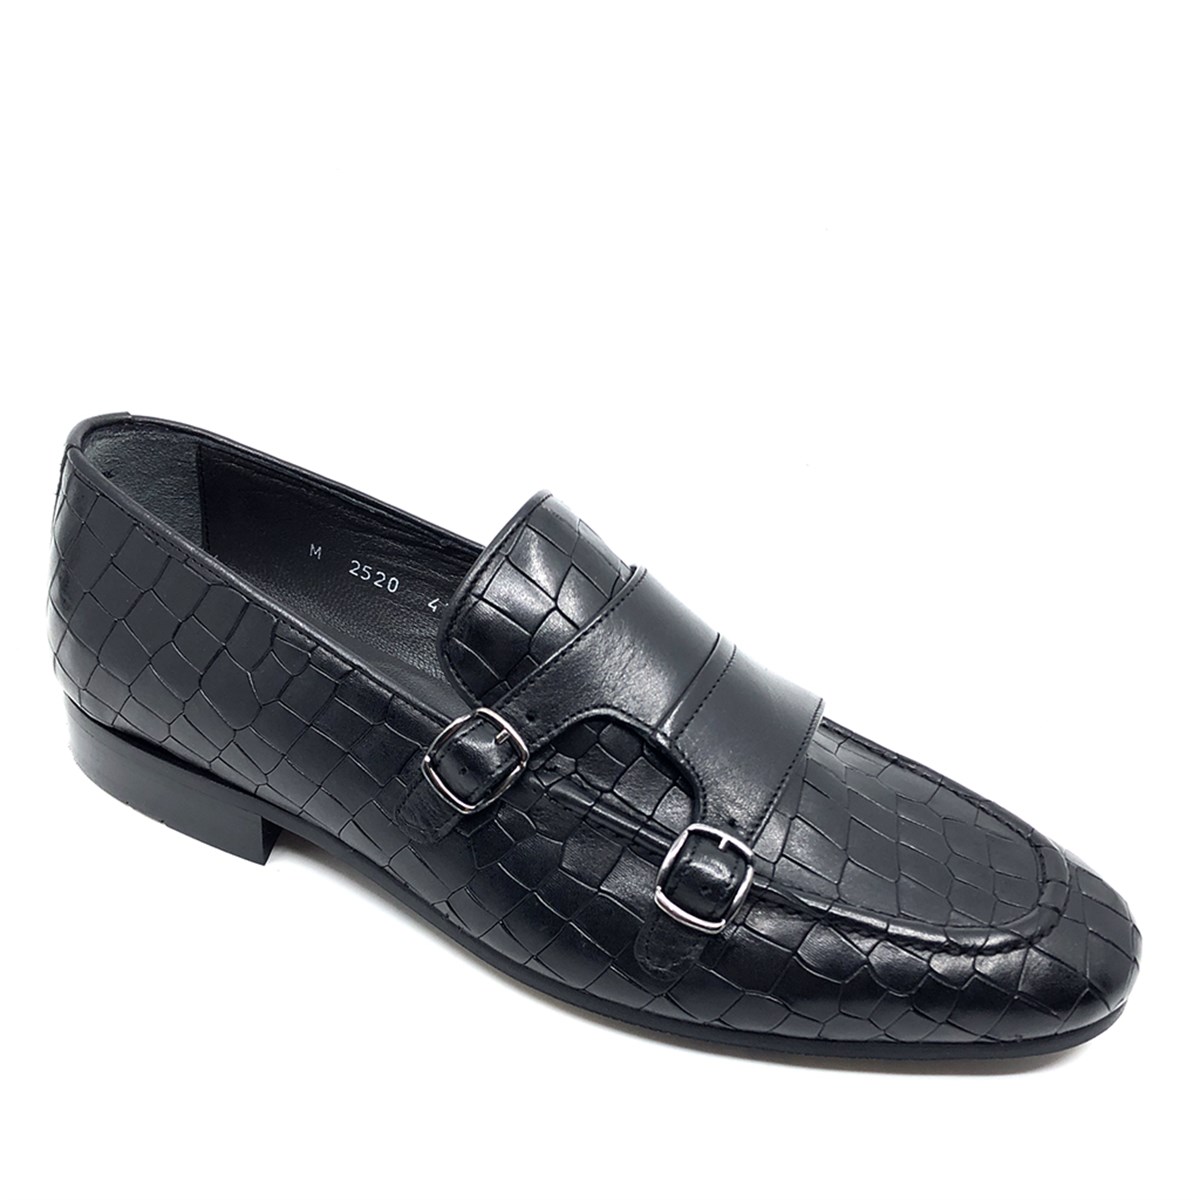 Fosco Hakiki Deri Klasik Erkek Ayakkabı, Renk: Siyah, Beden: 39